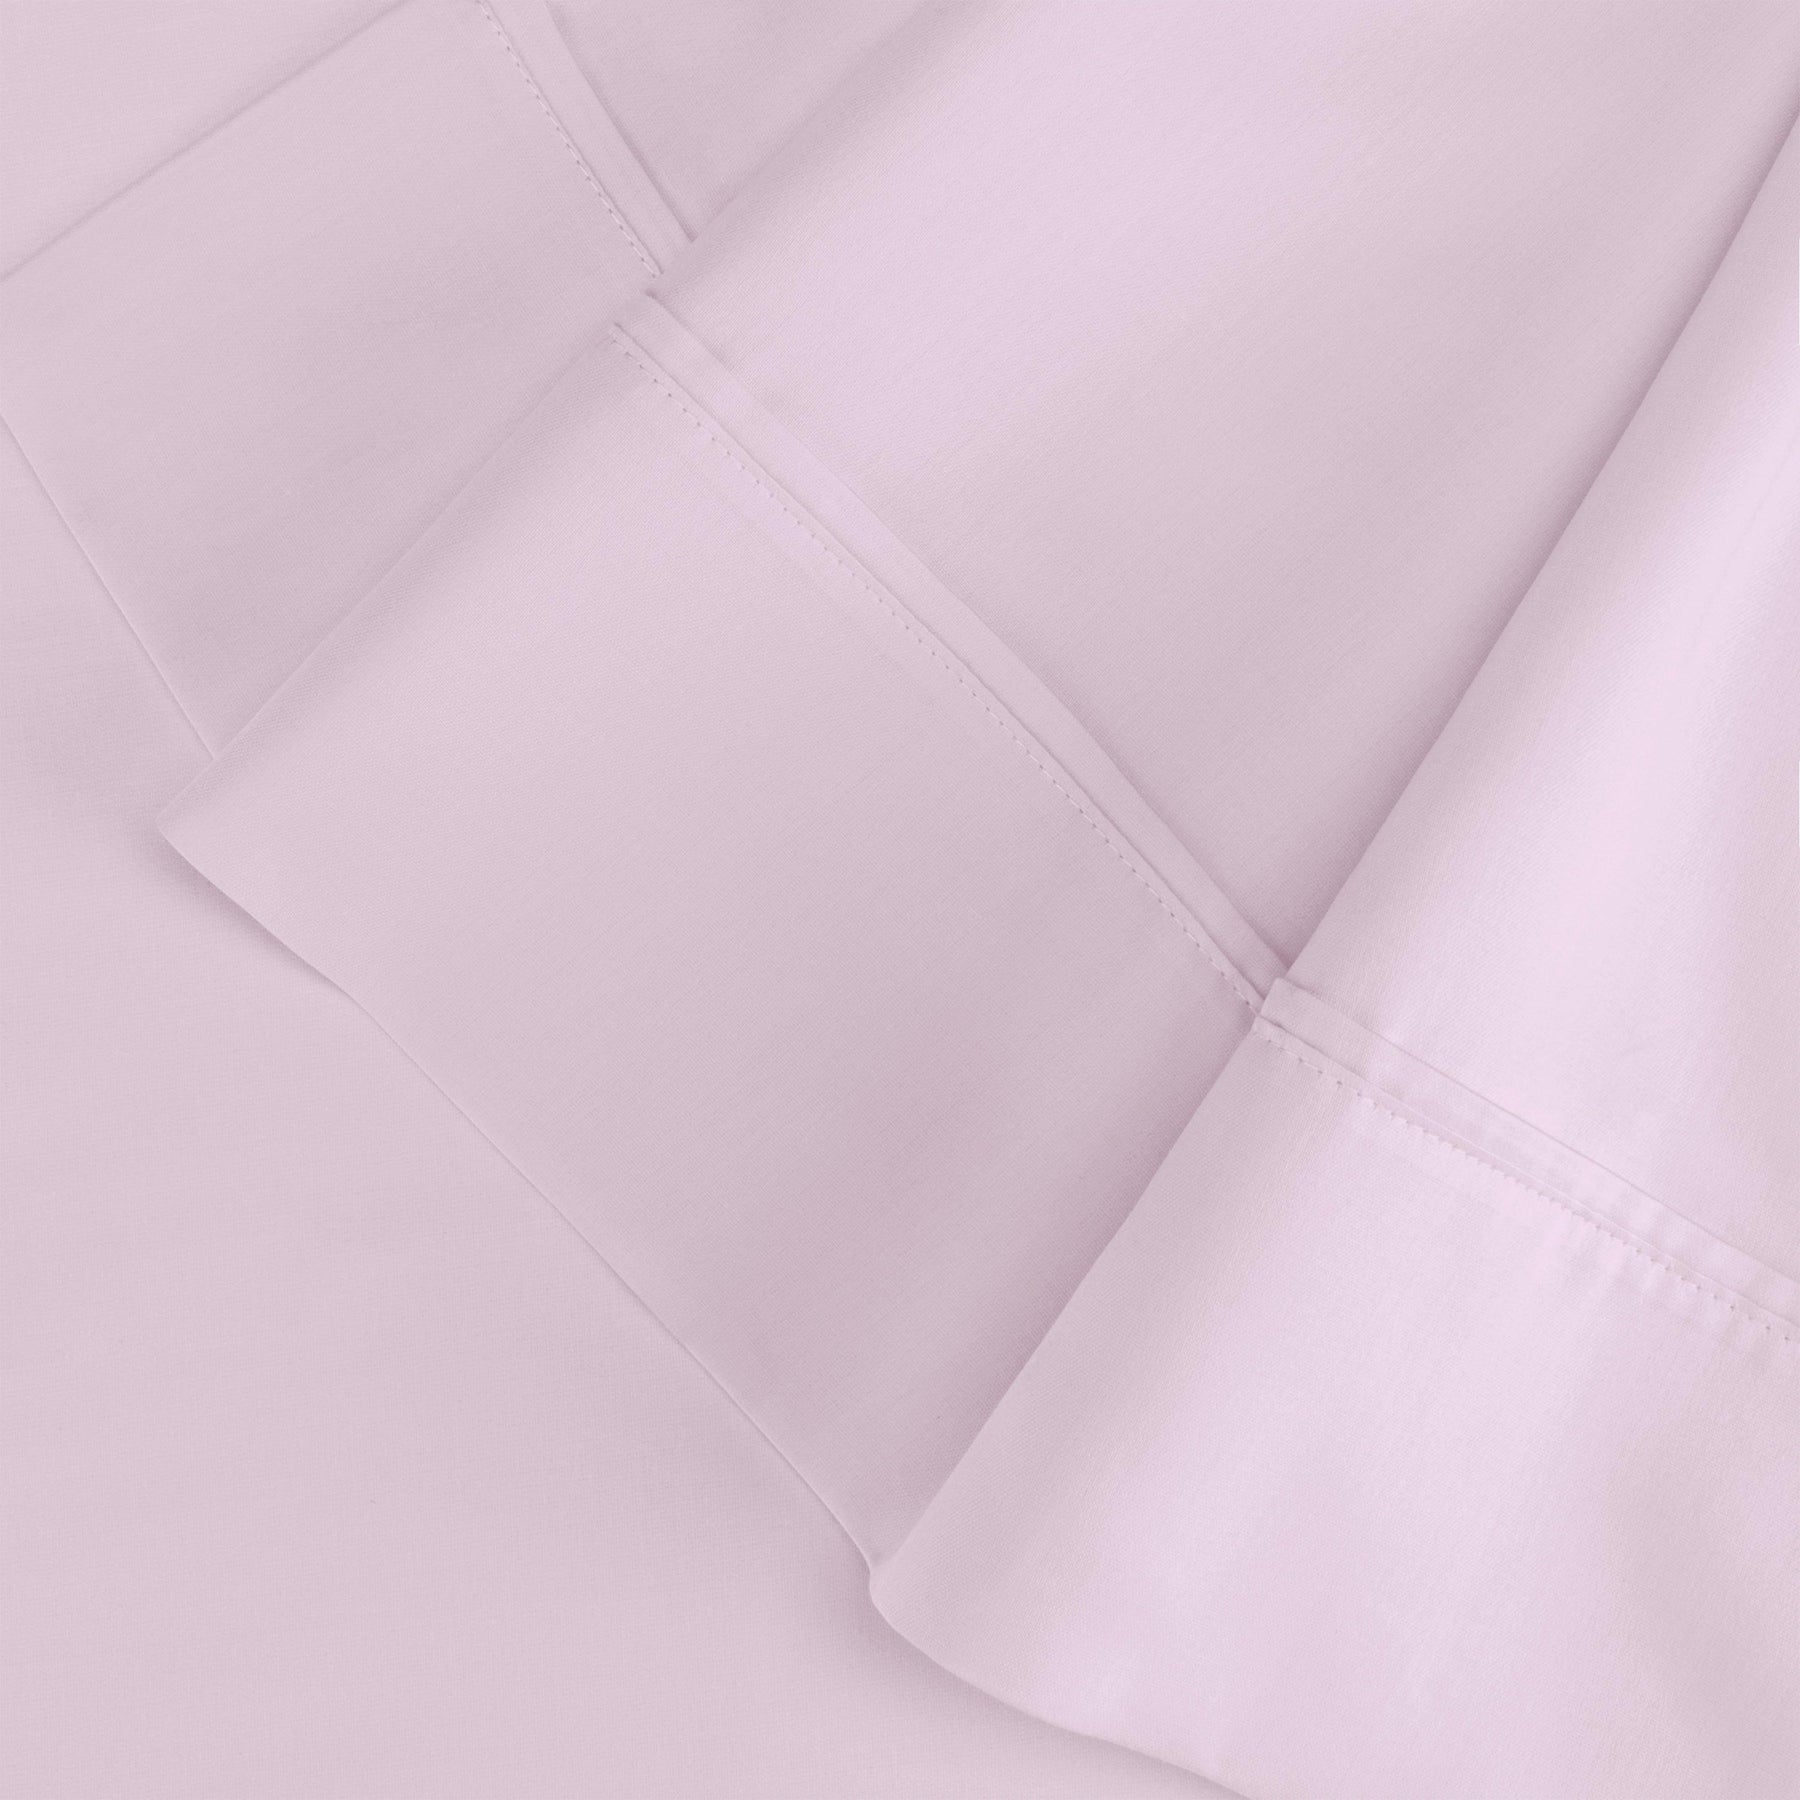  Wrinkle Resistant Egyptian Cotton 2-Piece Pillowcase Set -  Lilac